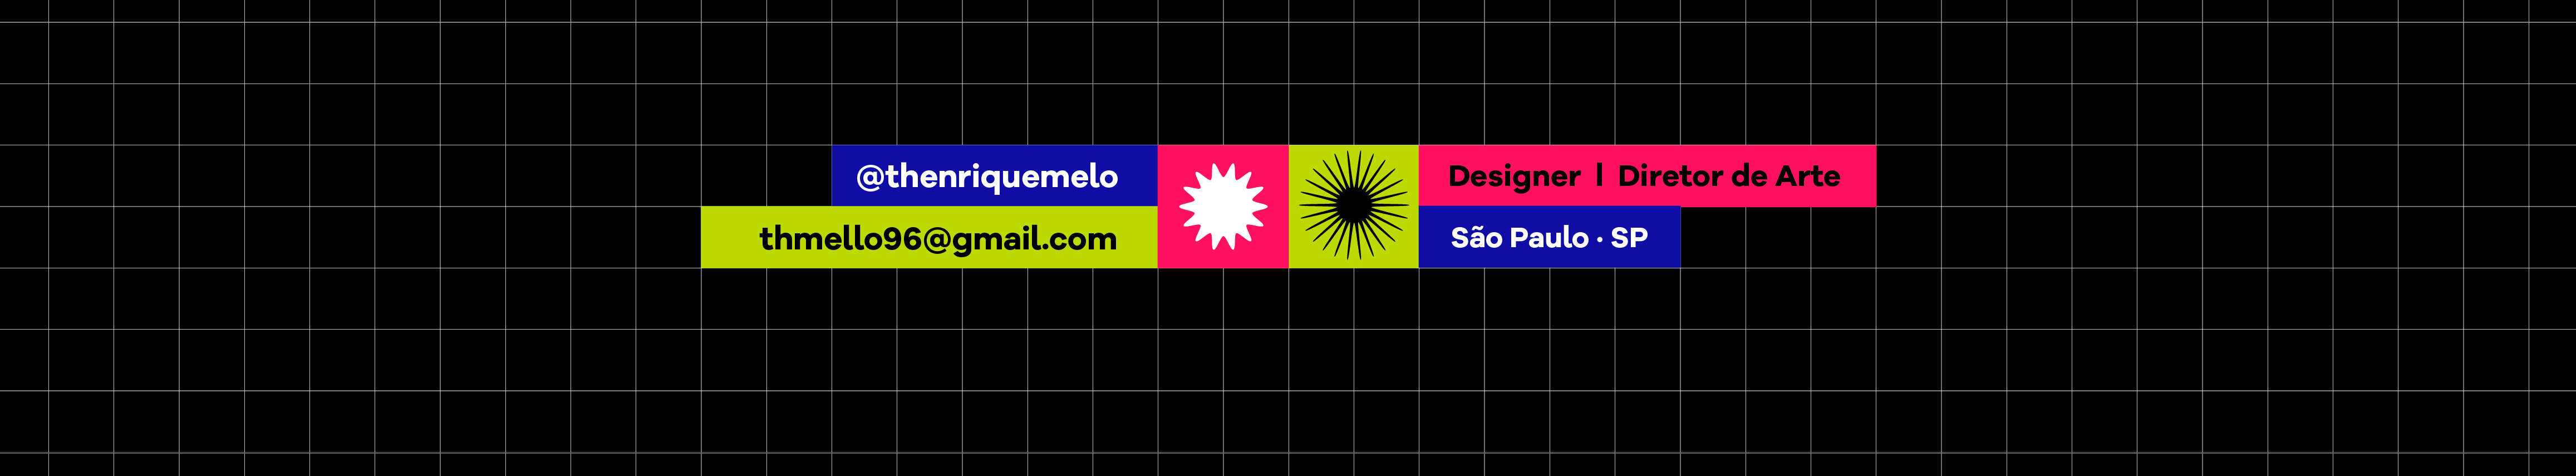 Banner del profilo di Thallysson Henrique Melo